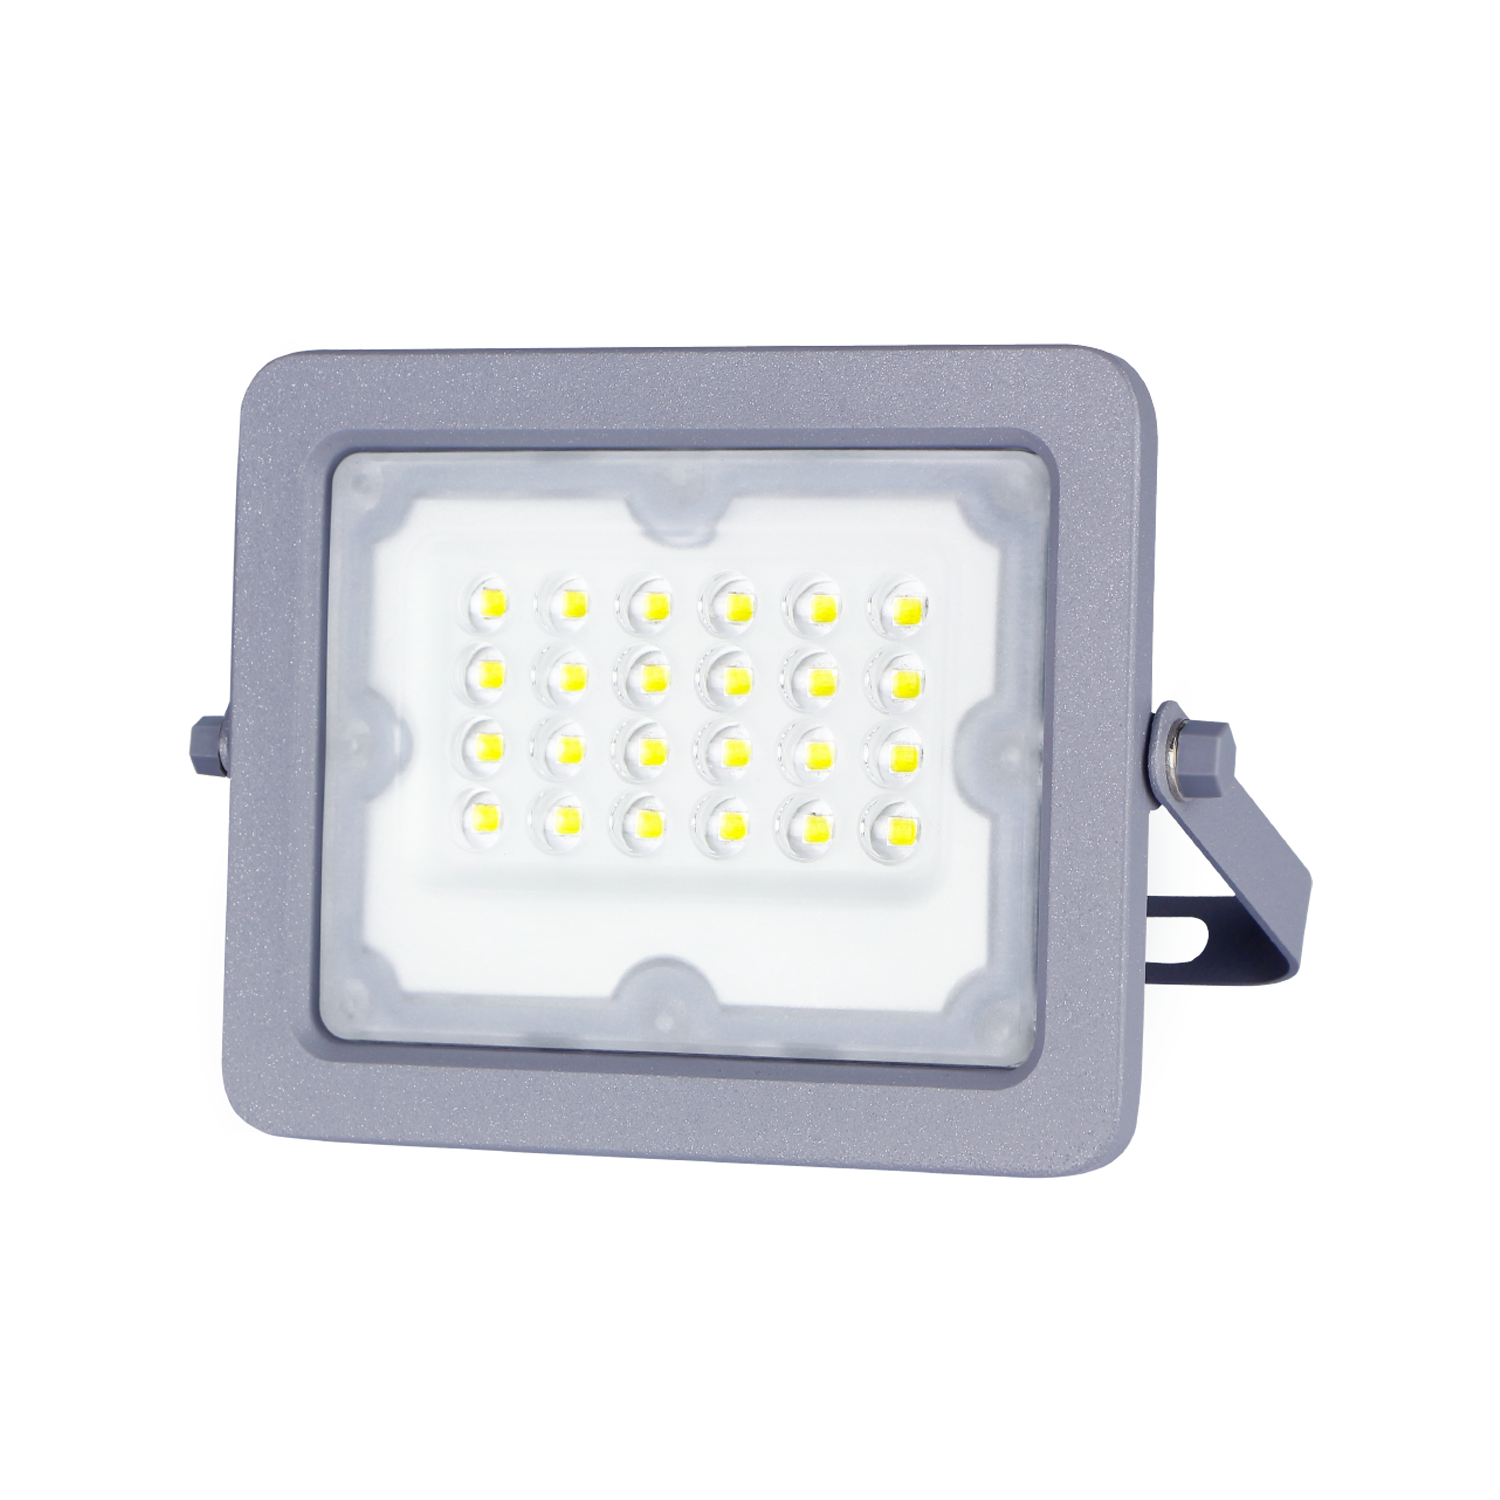 UISEBRT Foco de Trabajo LED 20W Trabajo LED Recargable Blanco Frio, Foco  LED Portátil IP65 Impermeable Luz de Trabajo para Jardín, Taller, Garaje